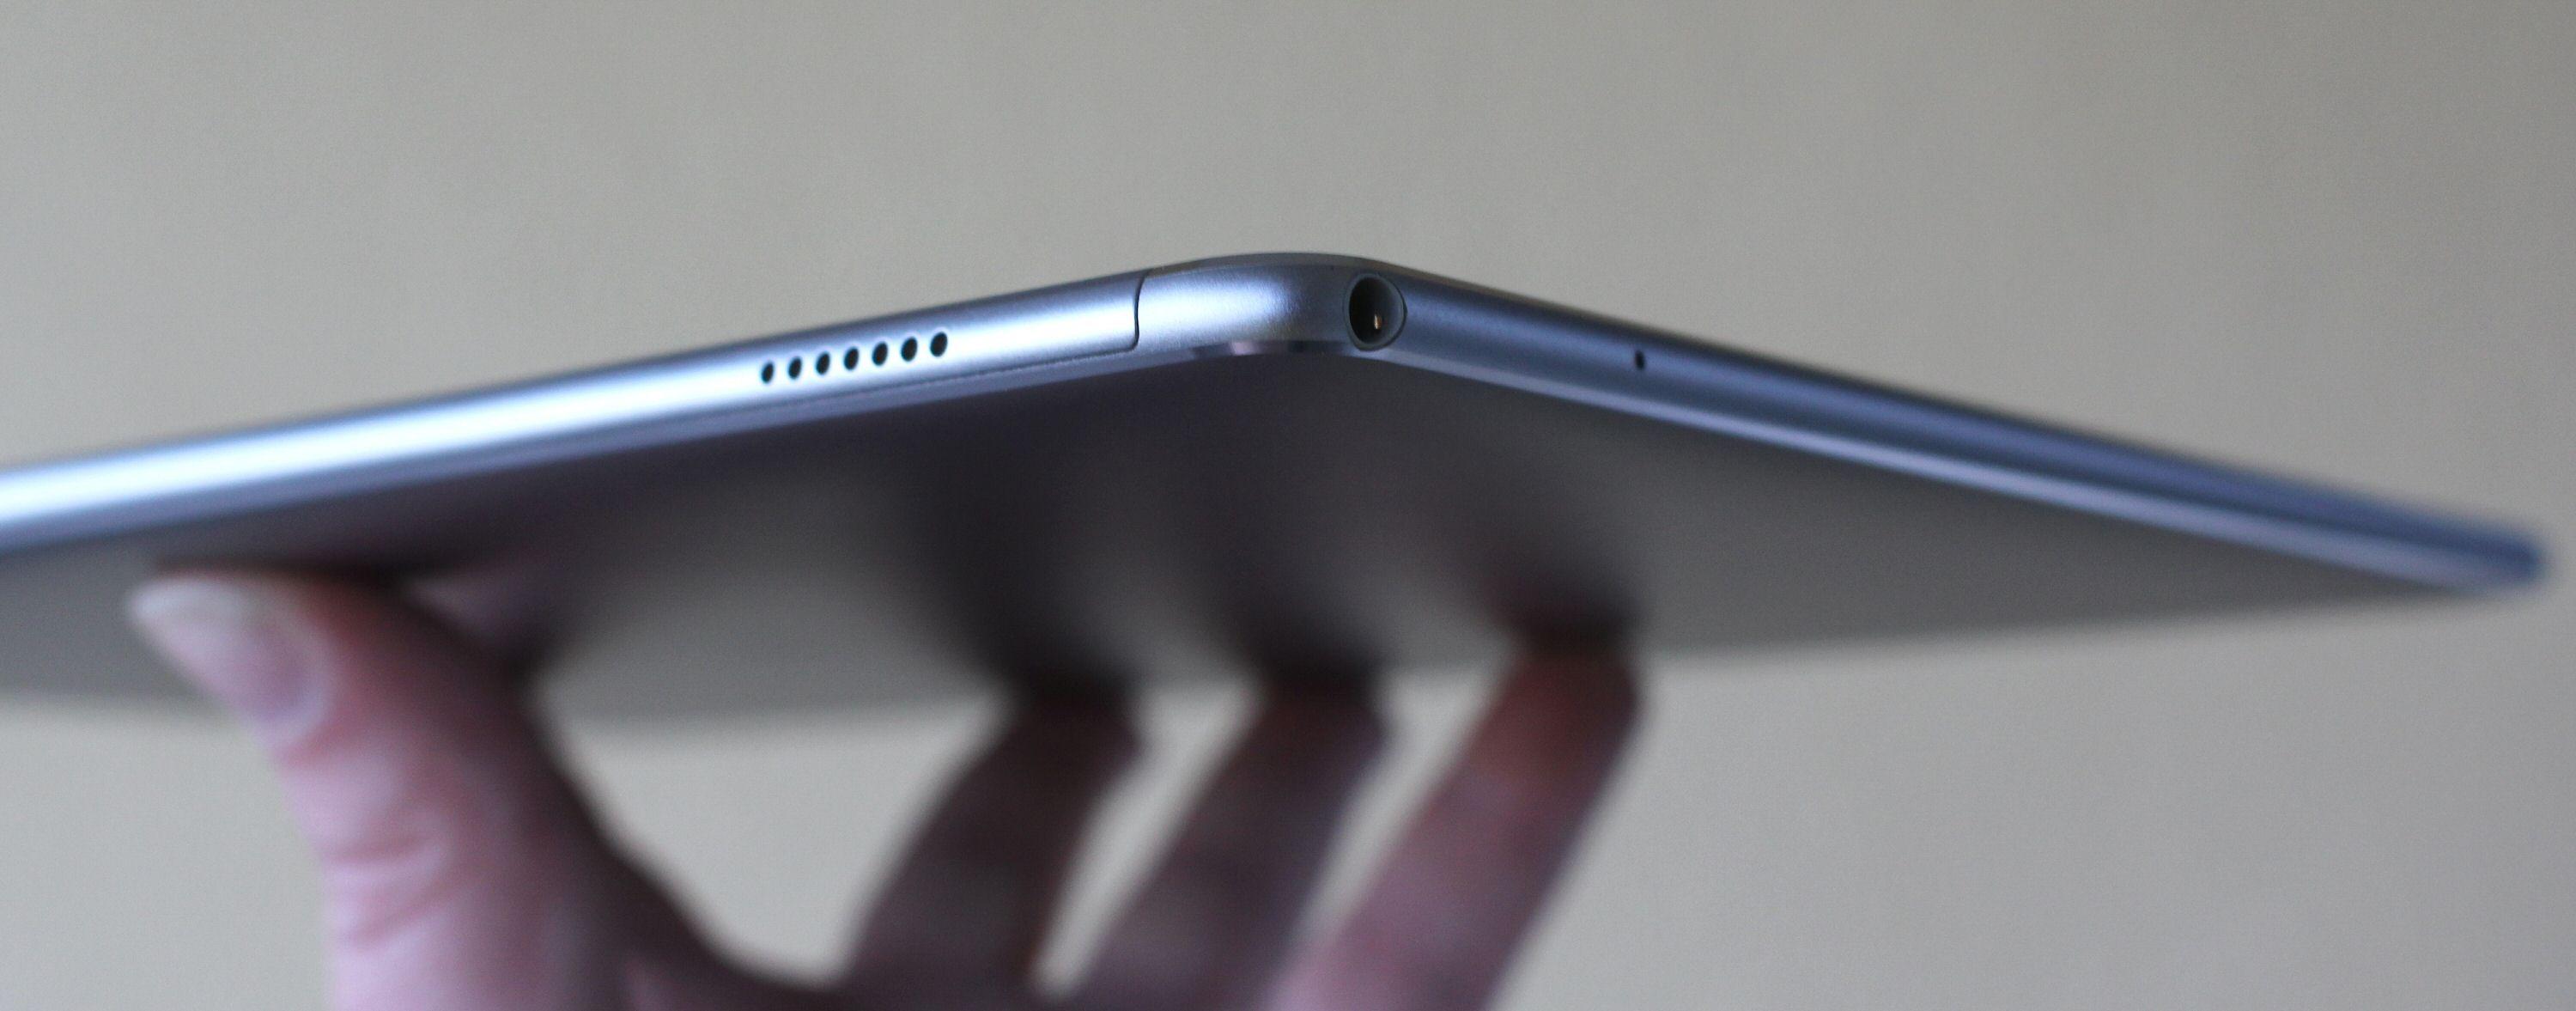 Huawei MateBook er tynn til PC å være. I hjørnet ser vi hodetelefonkontakten og perforeringen til den ene høytaleren.